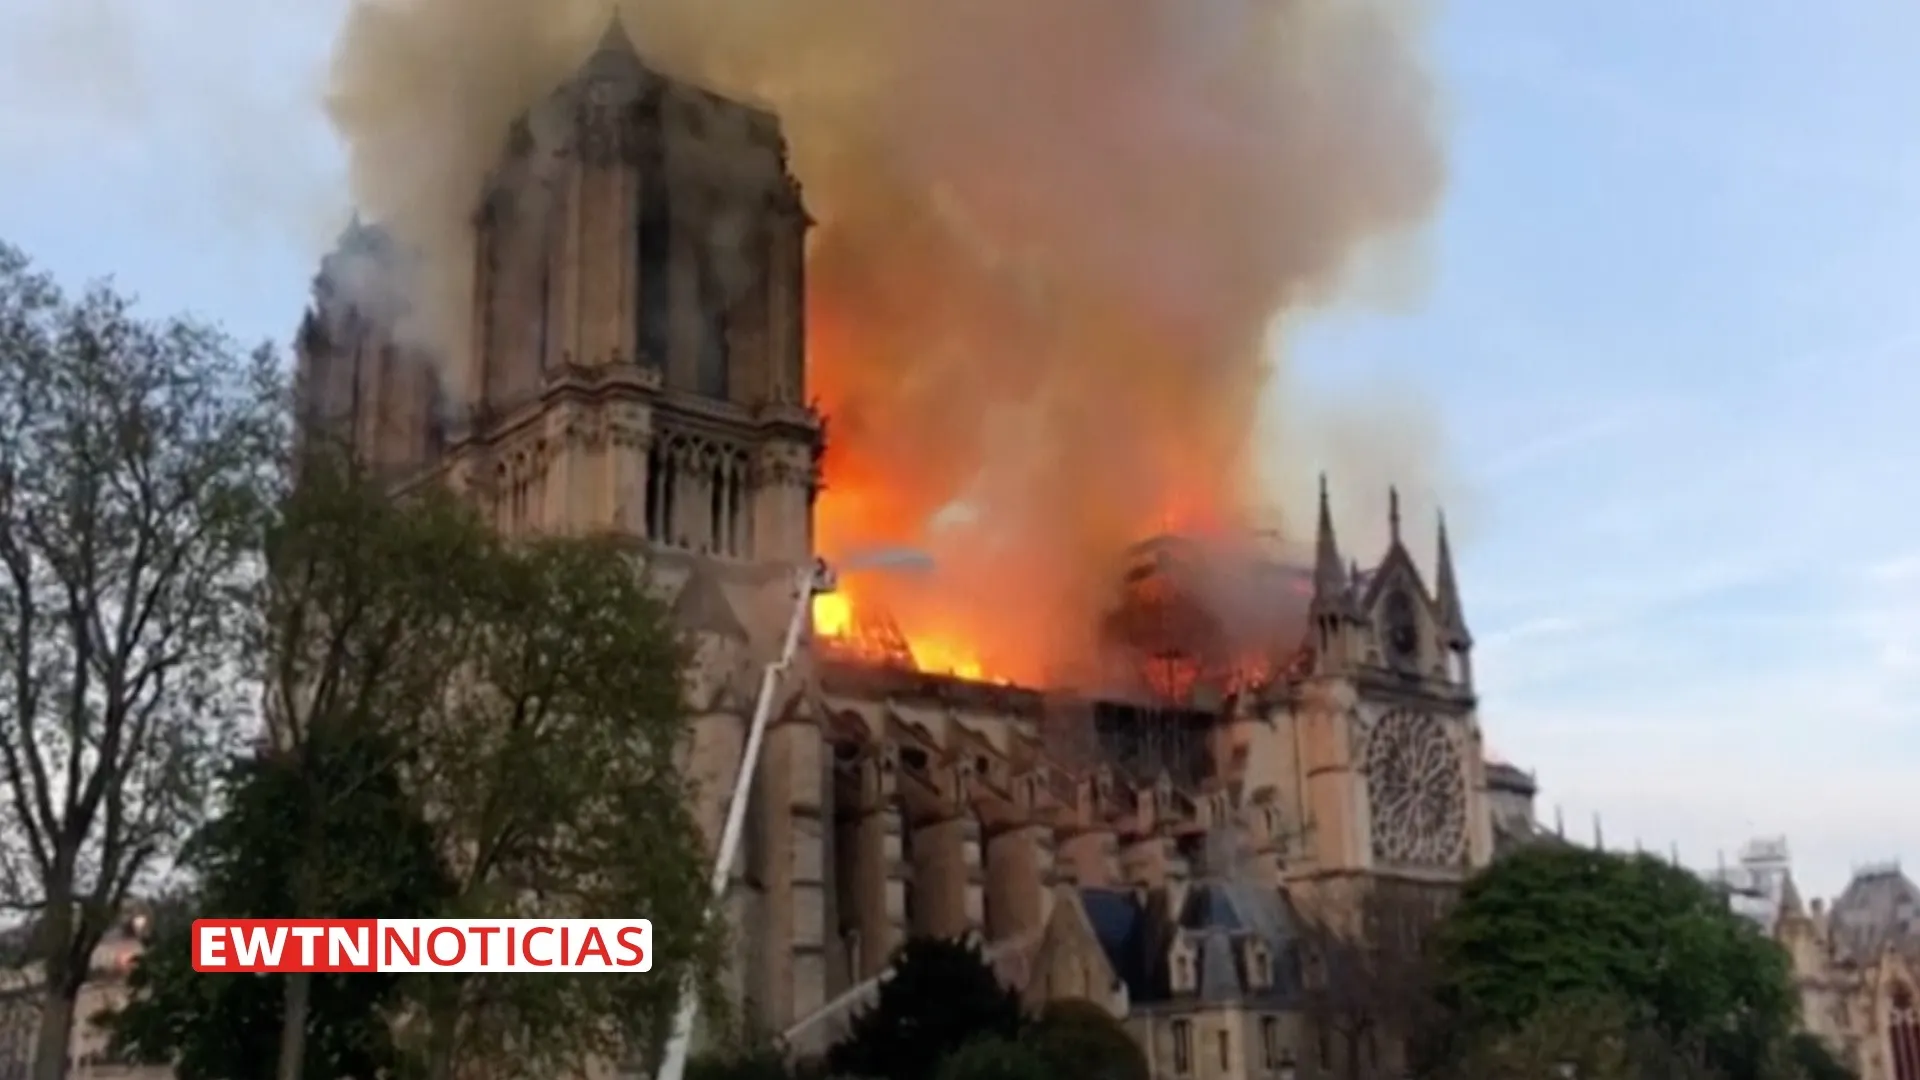 La Catedral de Notre Dame de París en llamas. Captura de video